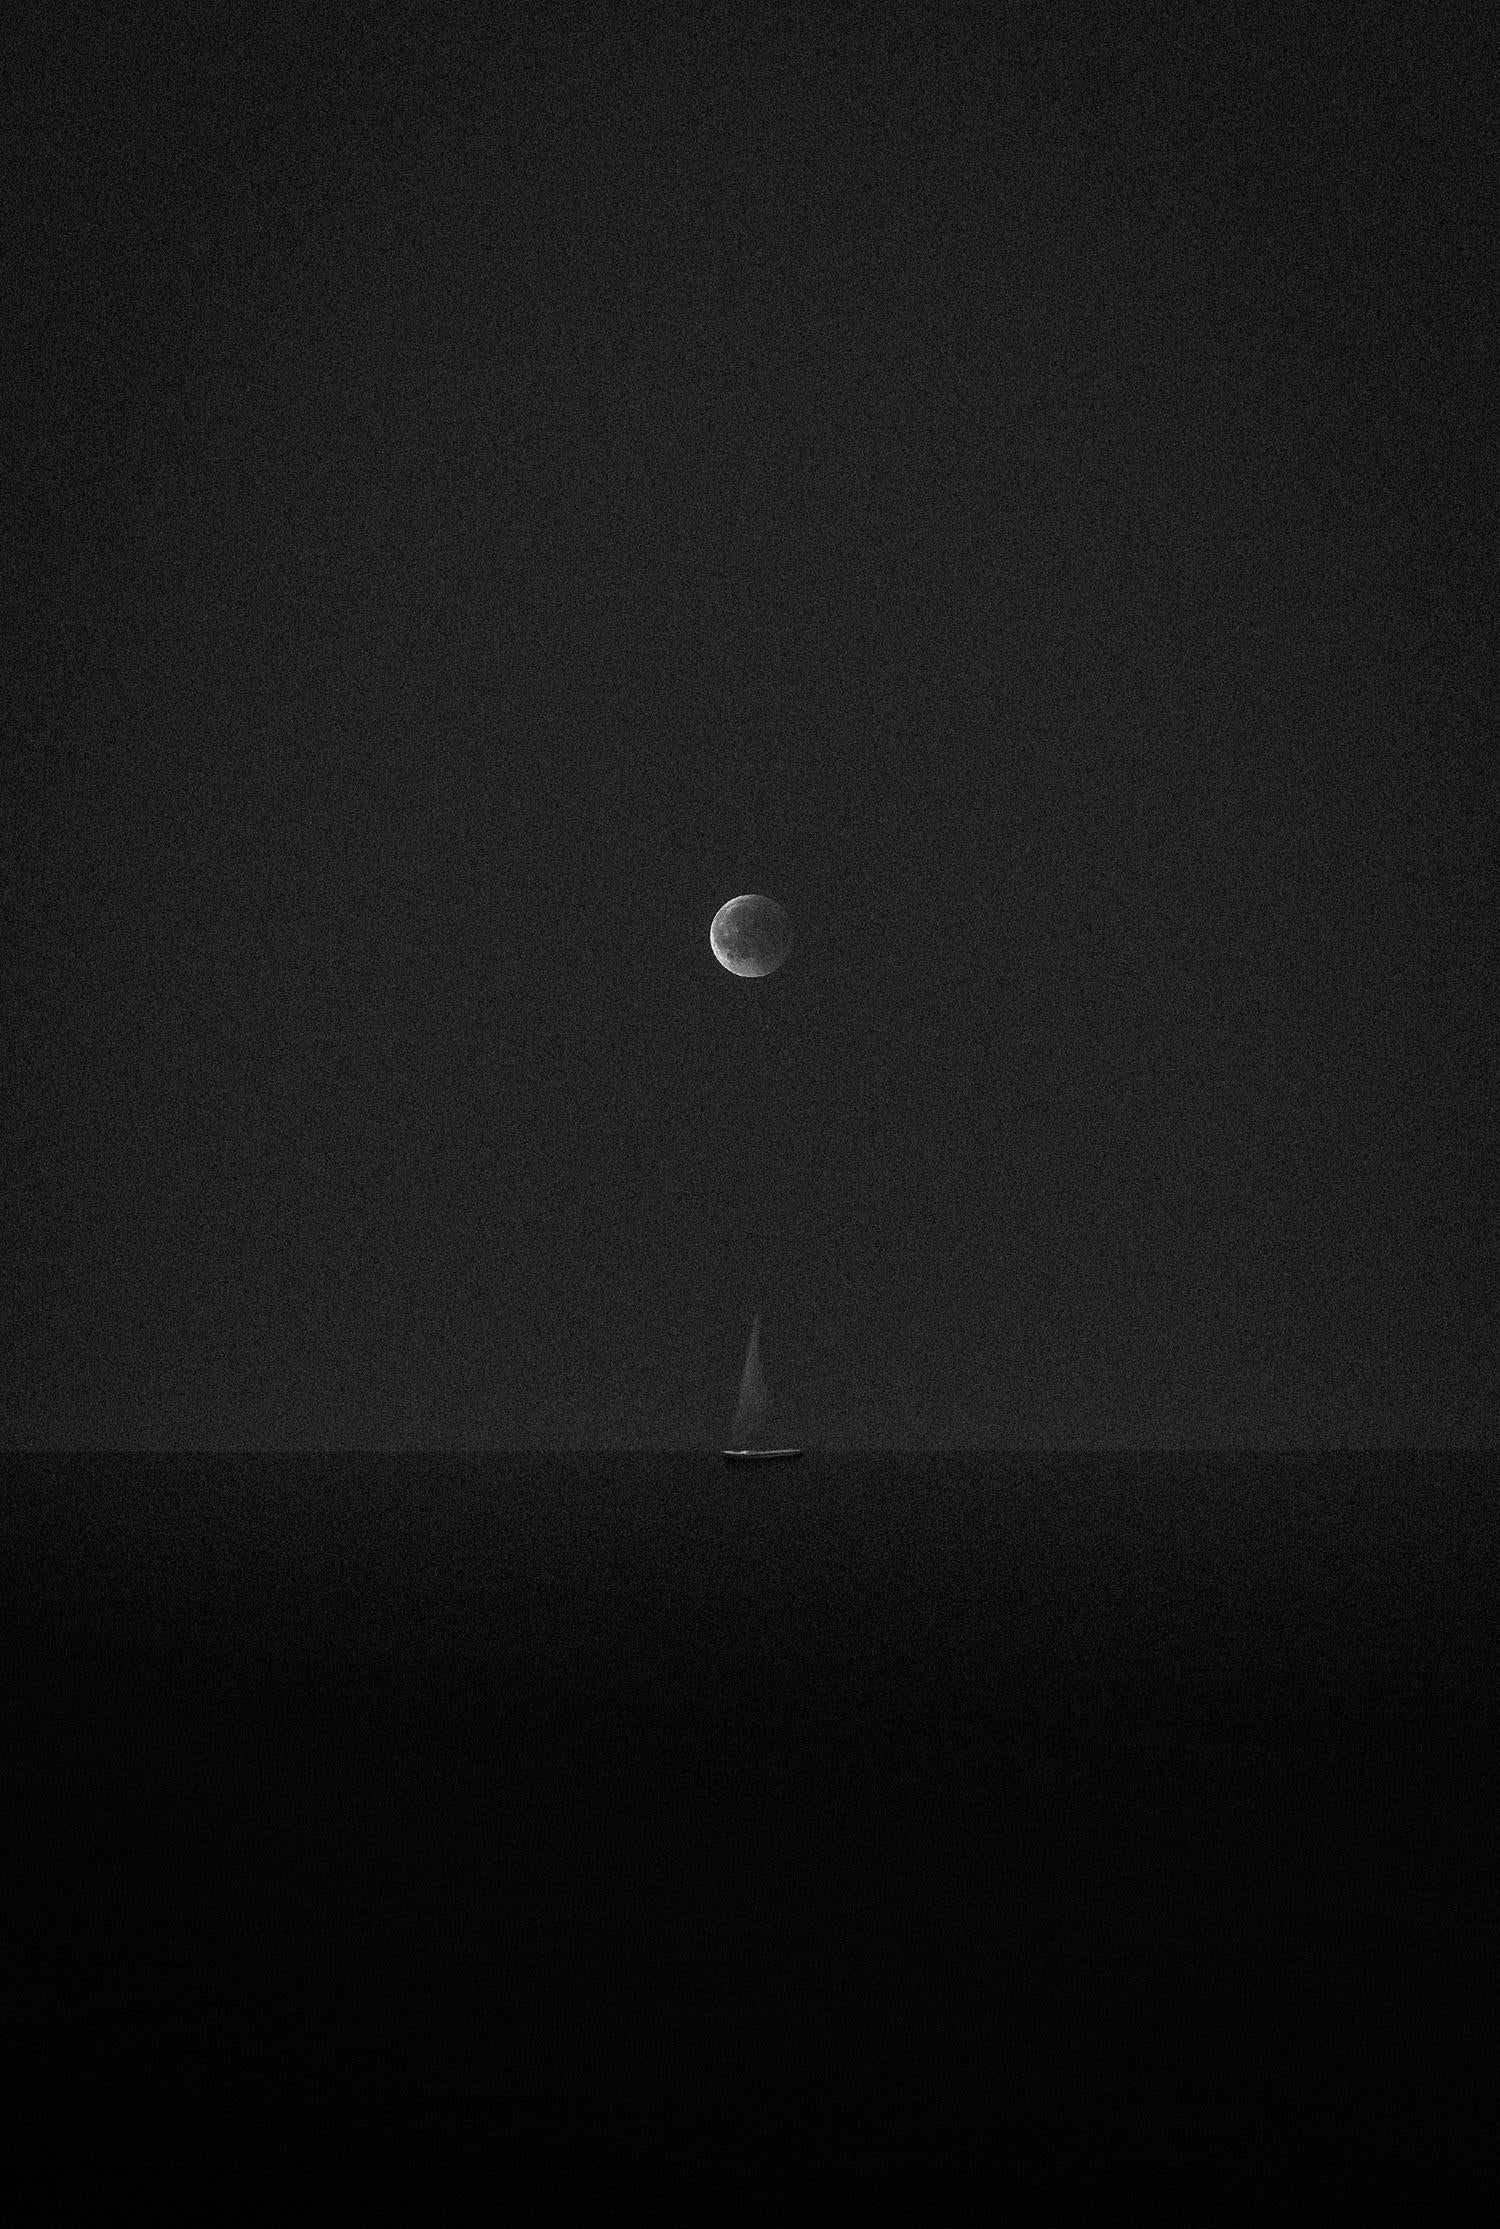 Landscape Photograph Karim Amr - Photographie « A boat under the moon » (Un bateau sous la lune) 162,5 x 112 cm encadrée par Karim